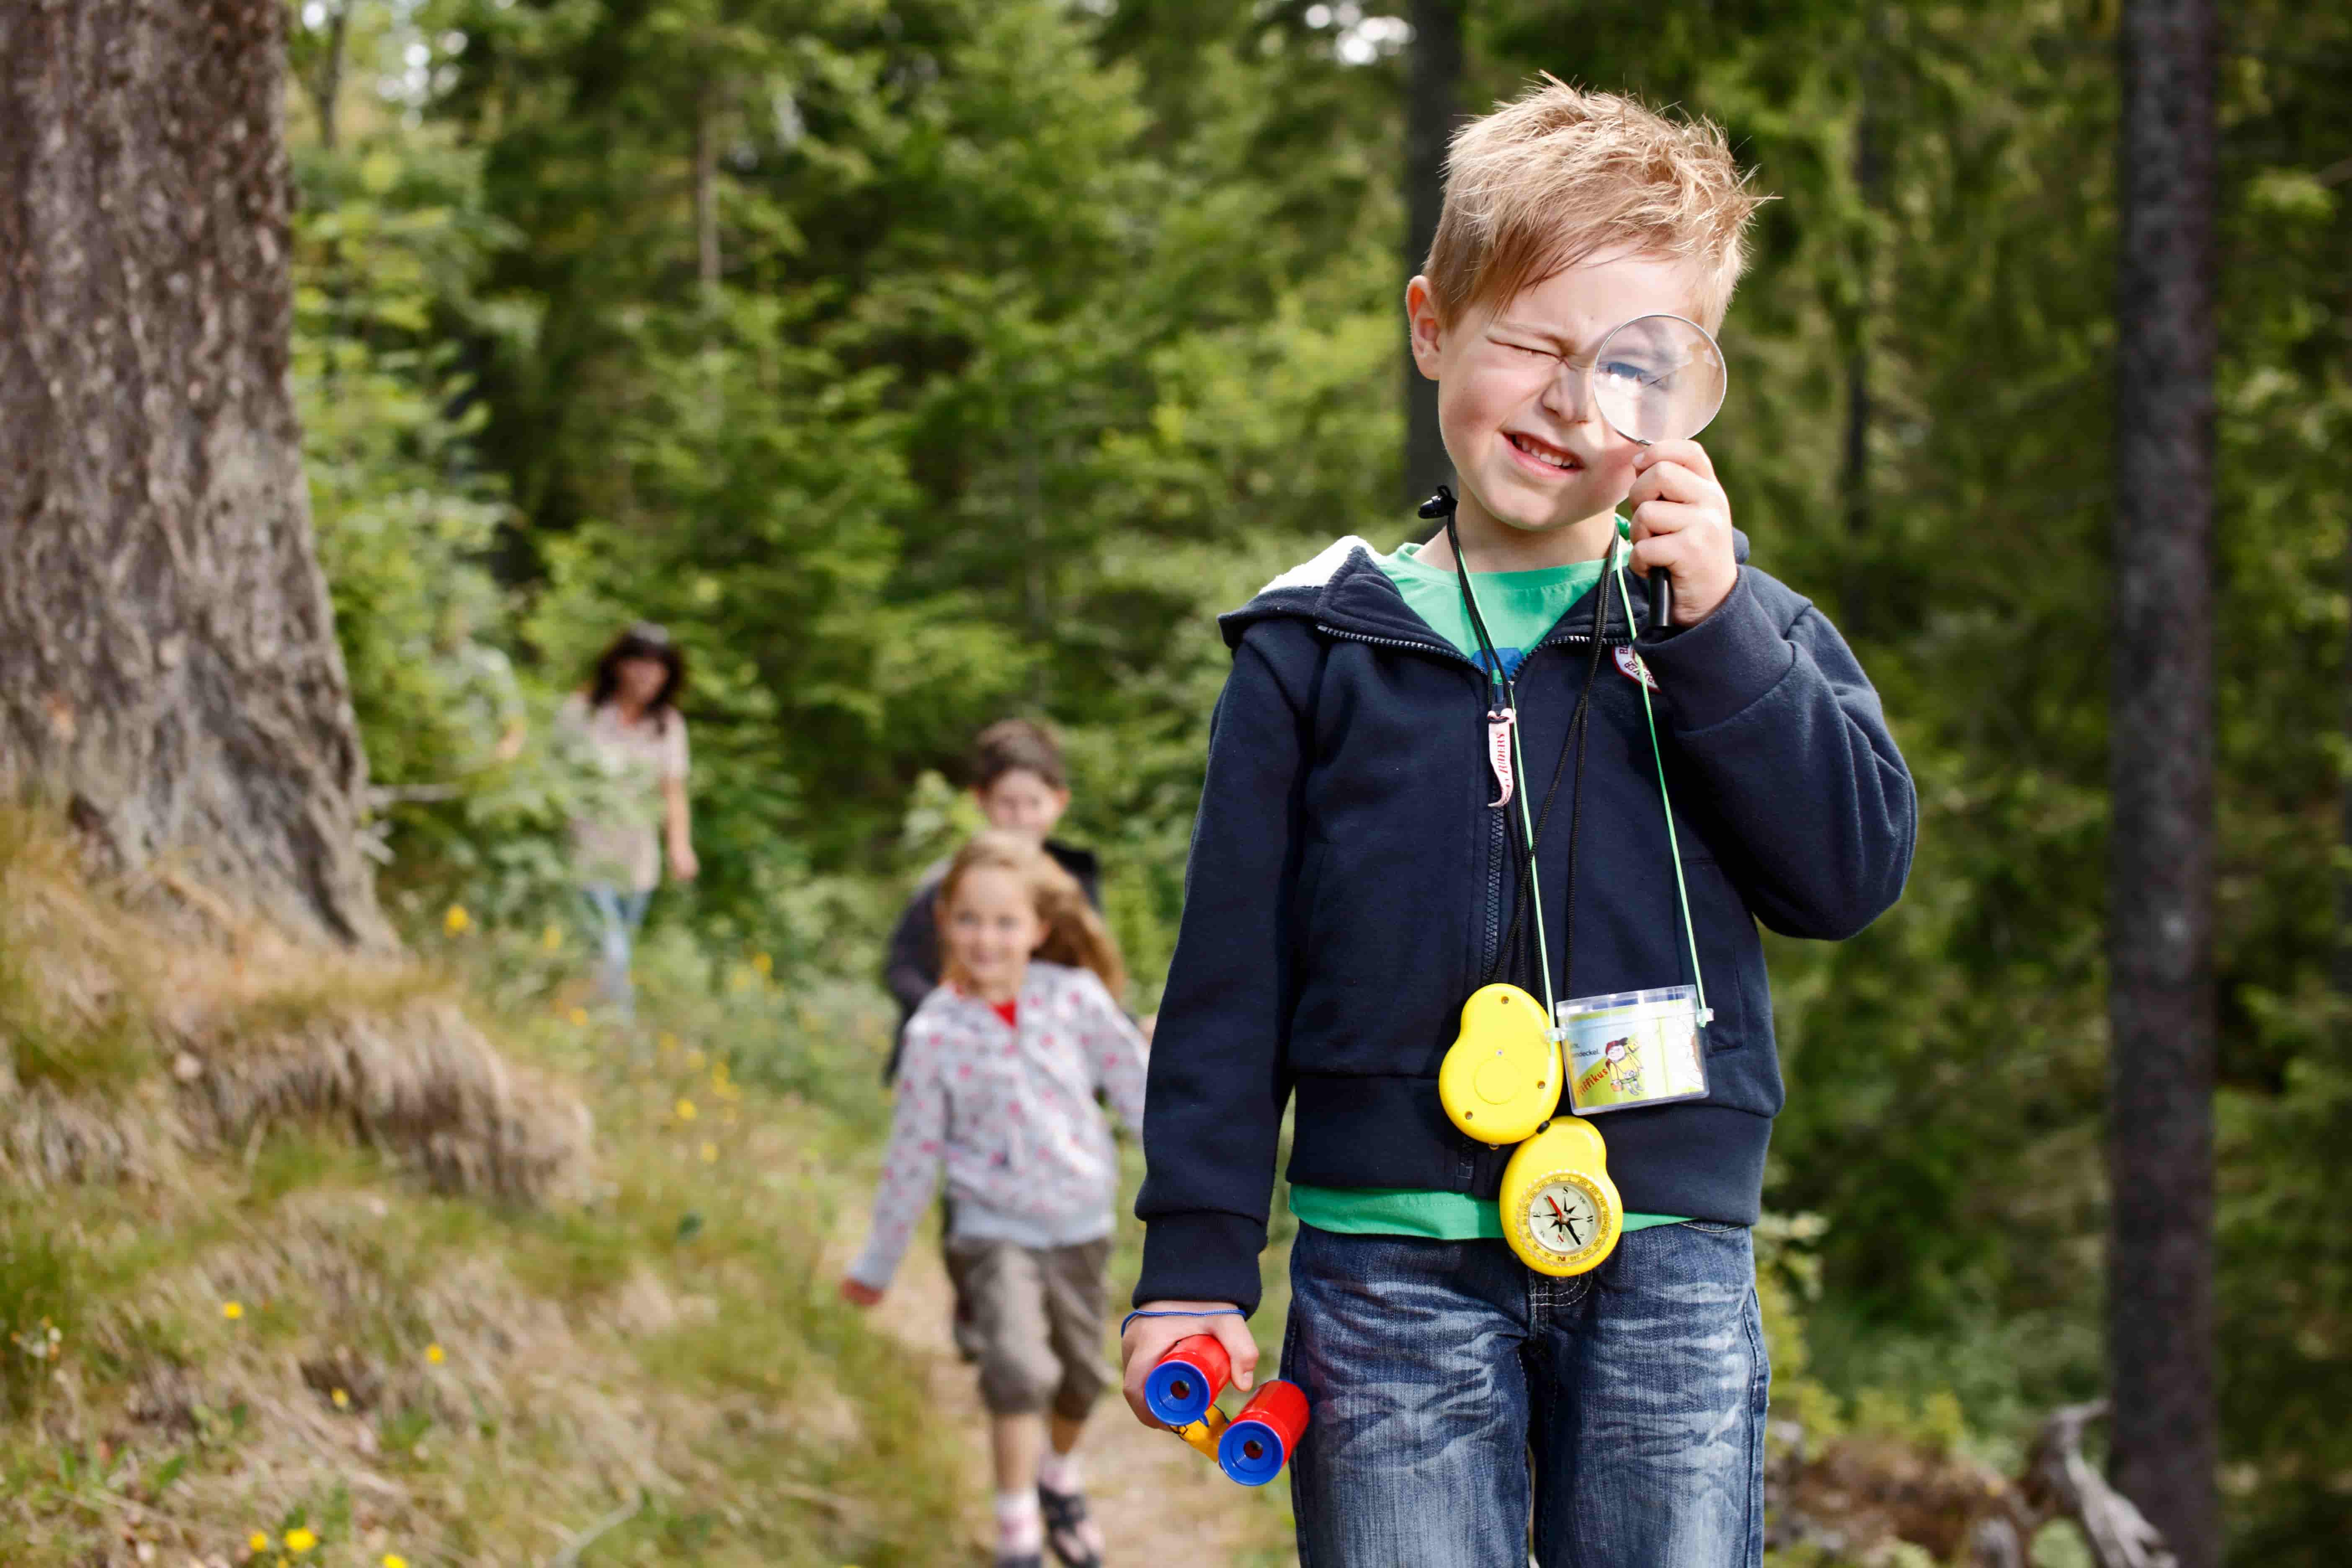 Kindern wandern auf einem Waldpfad. Das erste Kind hält ein Kinderfernglas entlang und schaut durch eine Lupe.